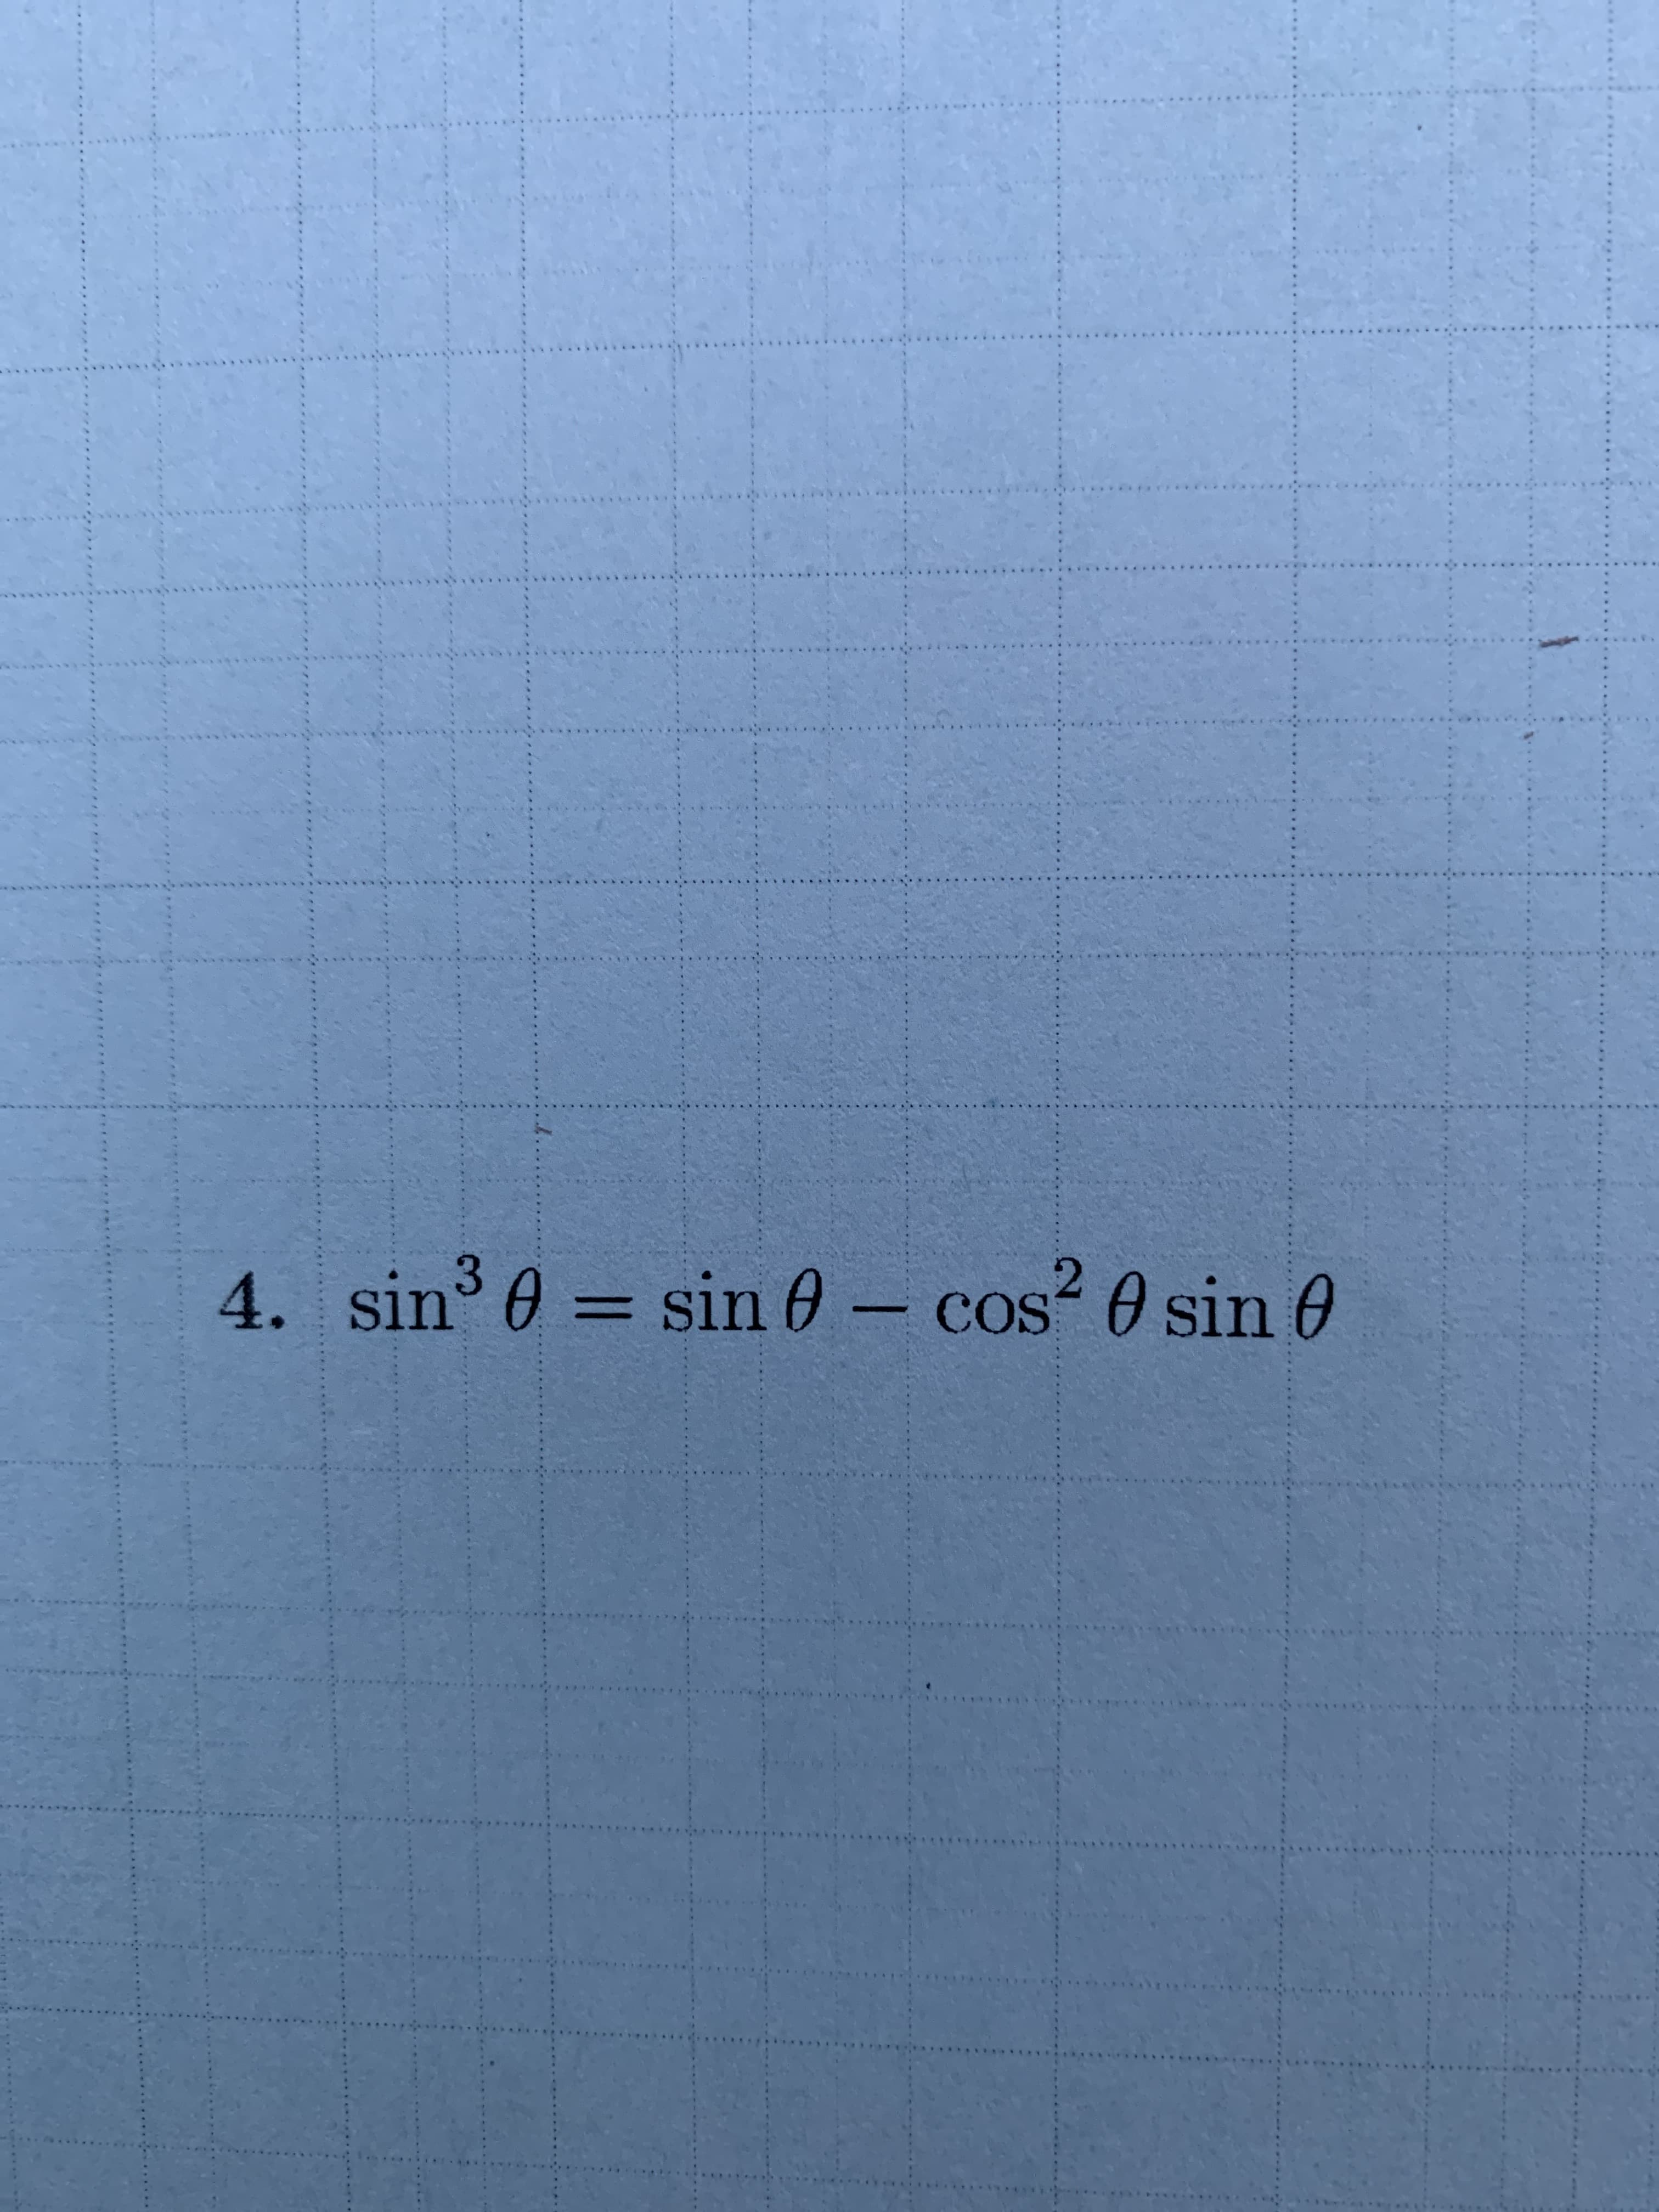 01
4. sin e= sin 0 - cos 0 sin
